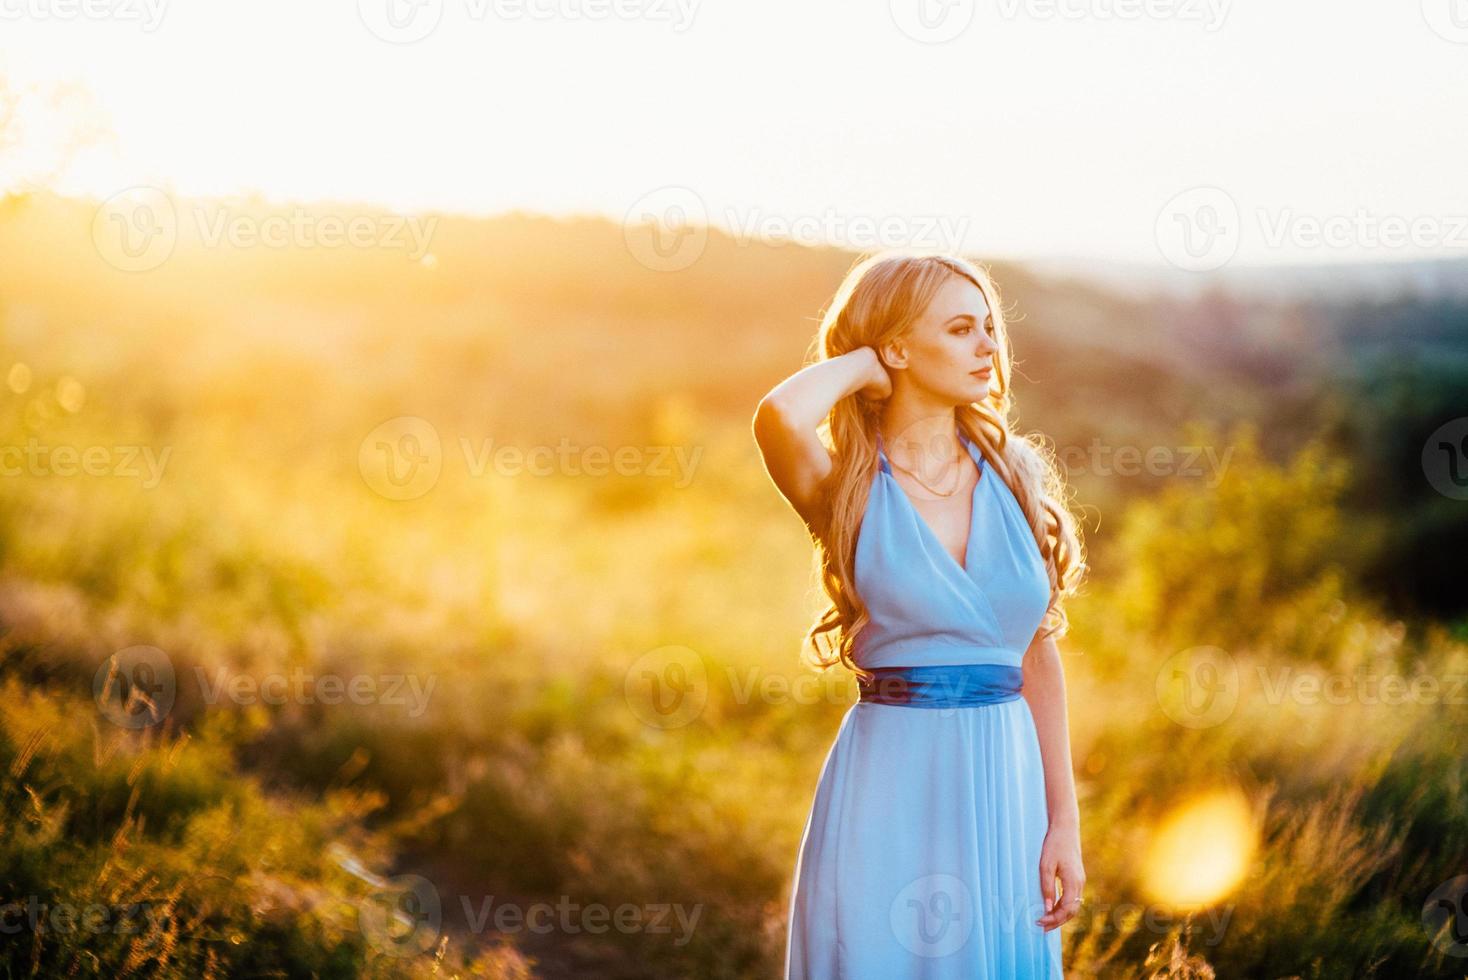 Femme blonde aux cheveux lâches dans une robe bleu clair à la lumière du coucher du soleil photo